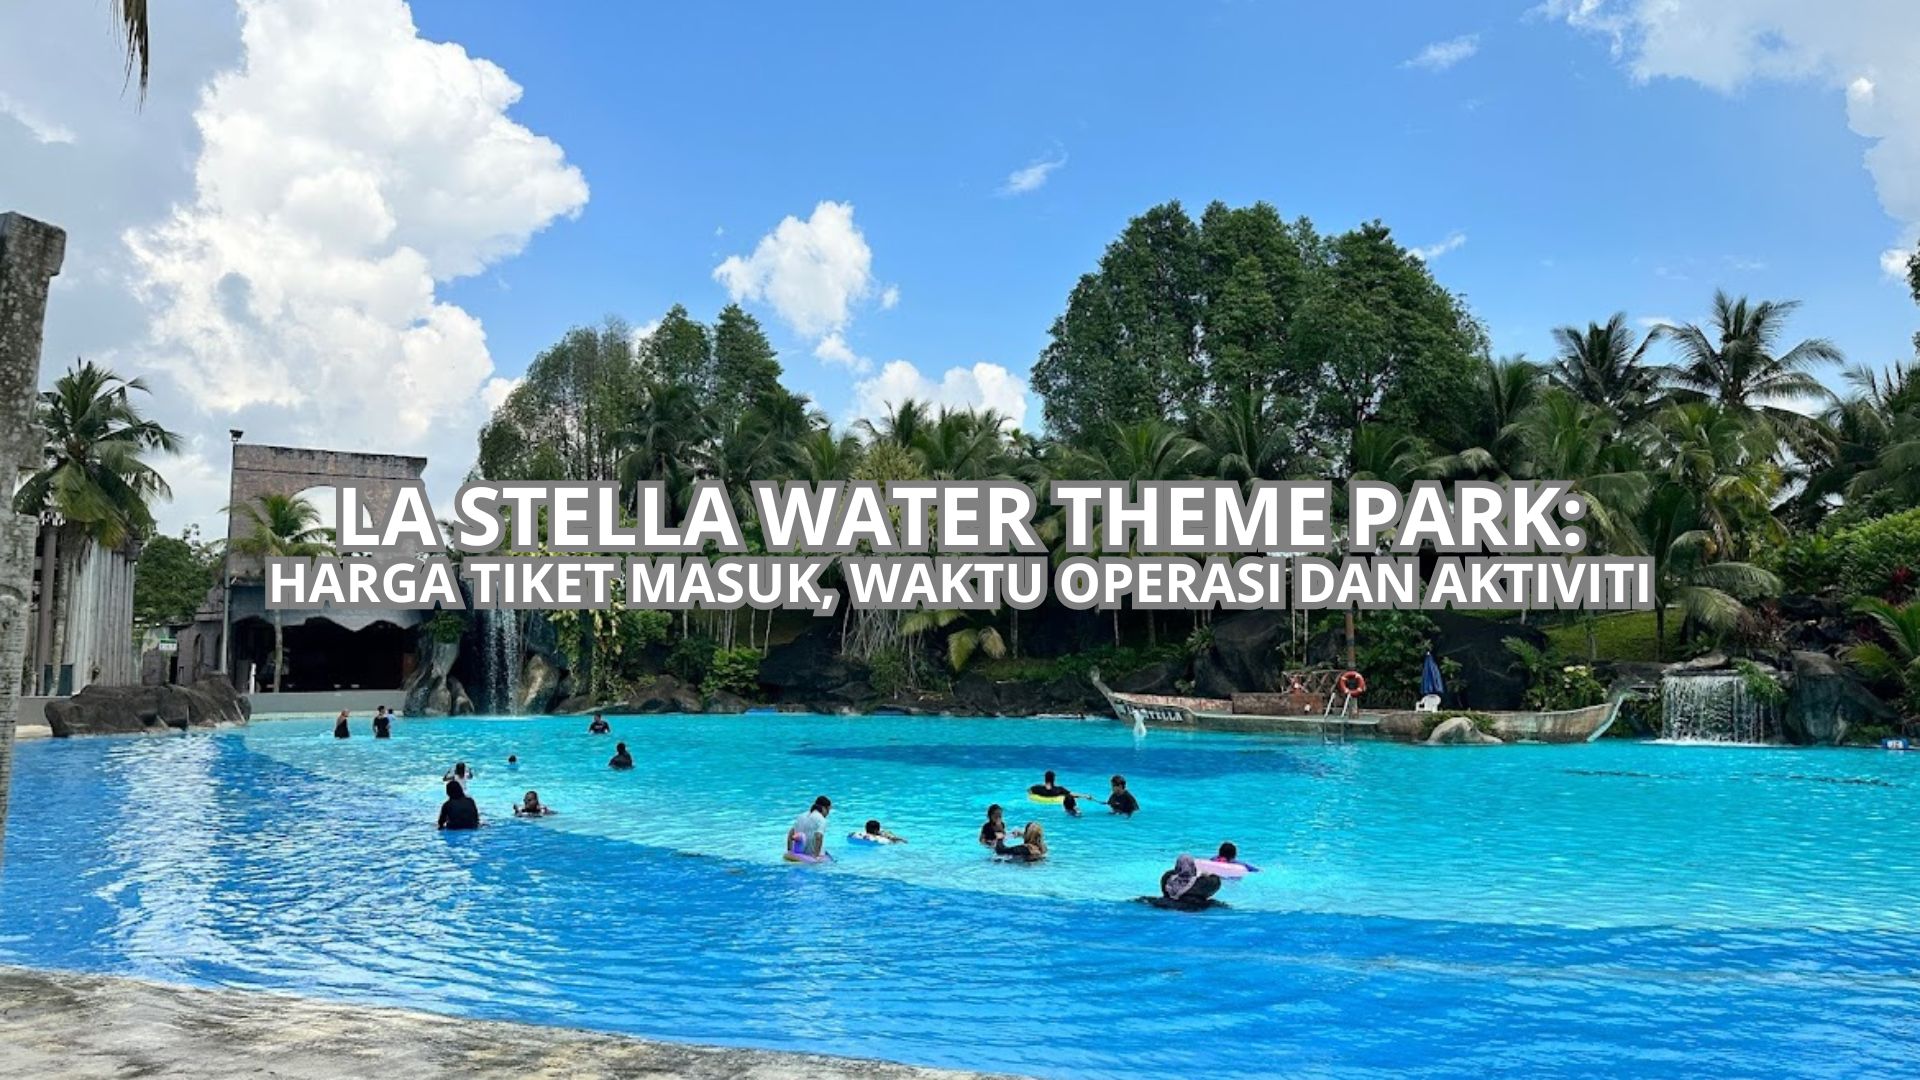 La Stella Water Theme Park Cover